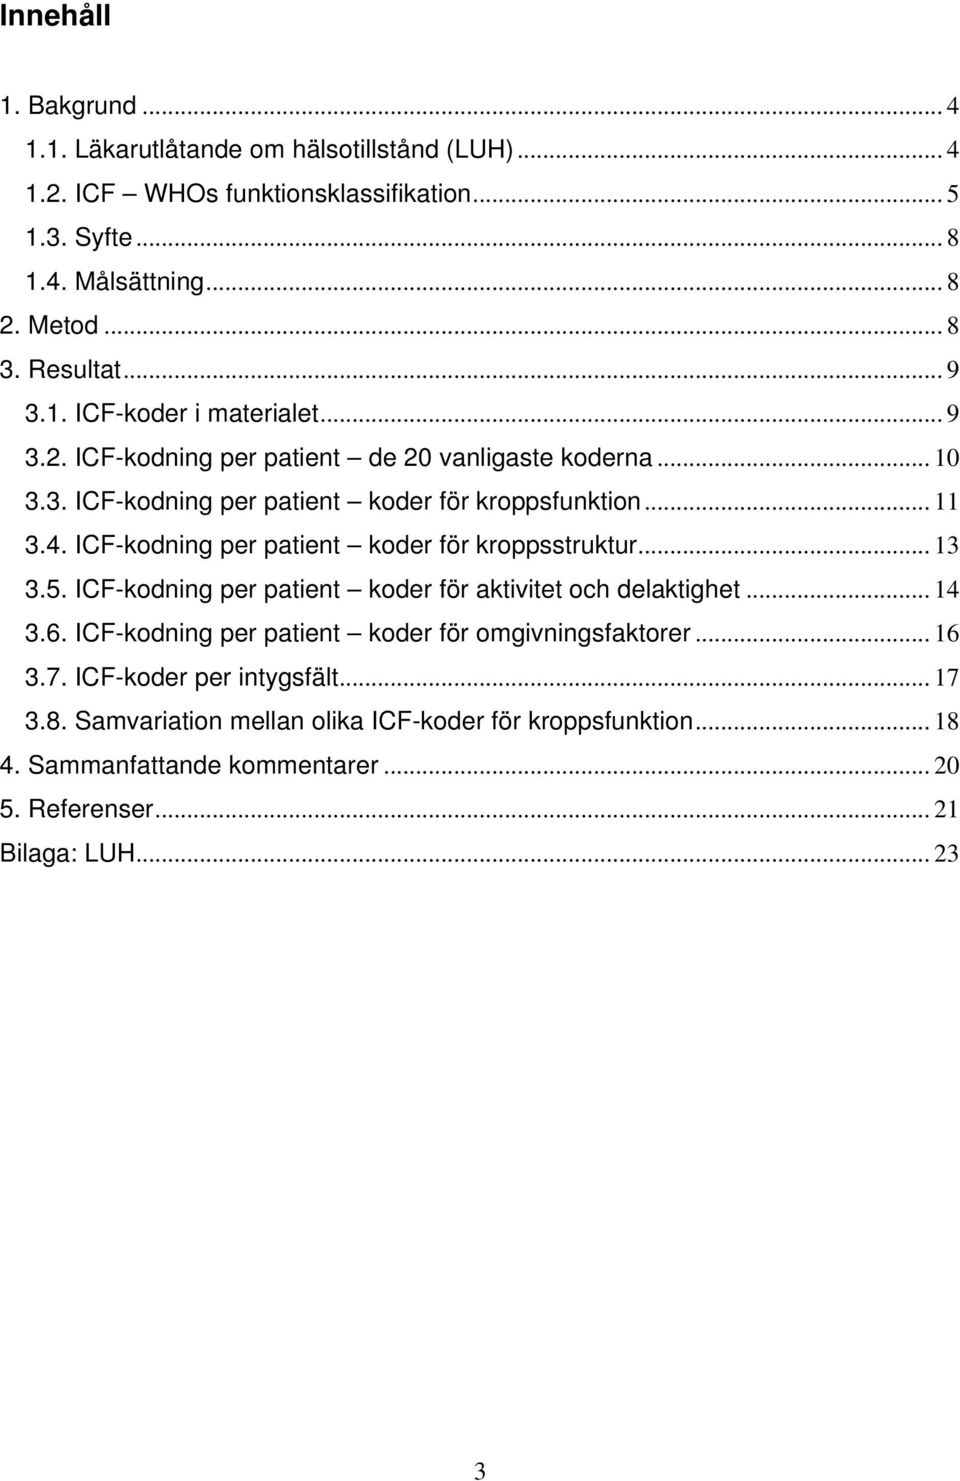 ICF-kodning per patient koder för kroppsstruktur... 13 3.5. ICF-kodning per patient koder för aktivitet och delaktighet... 14 3.6.